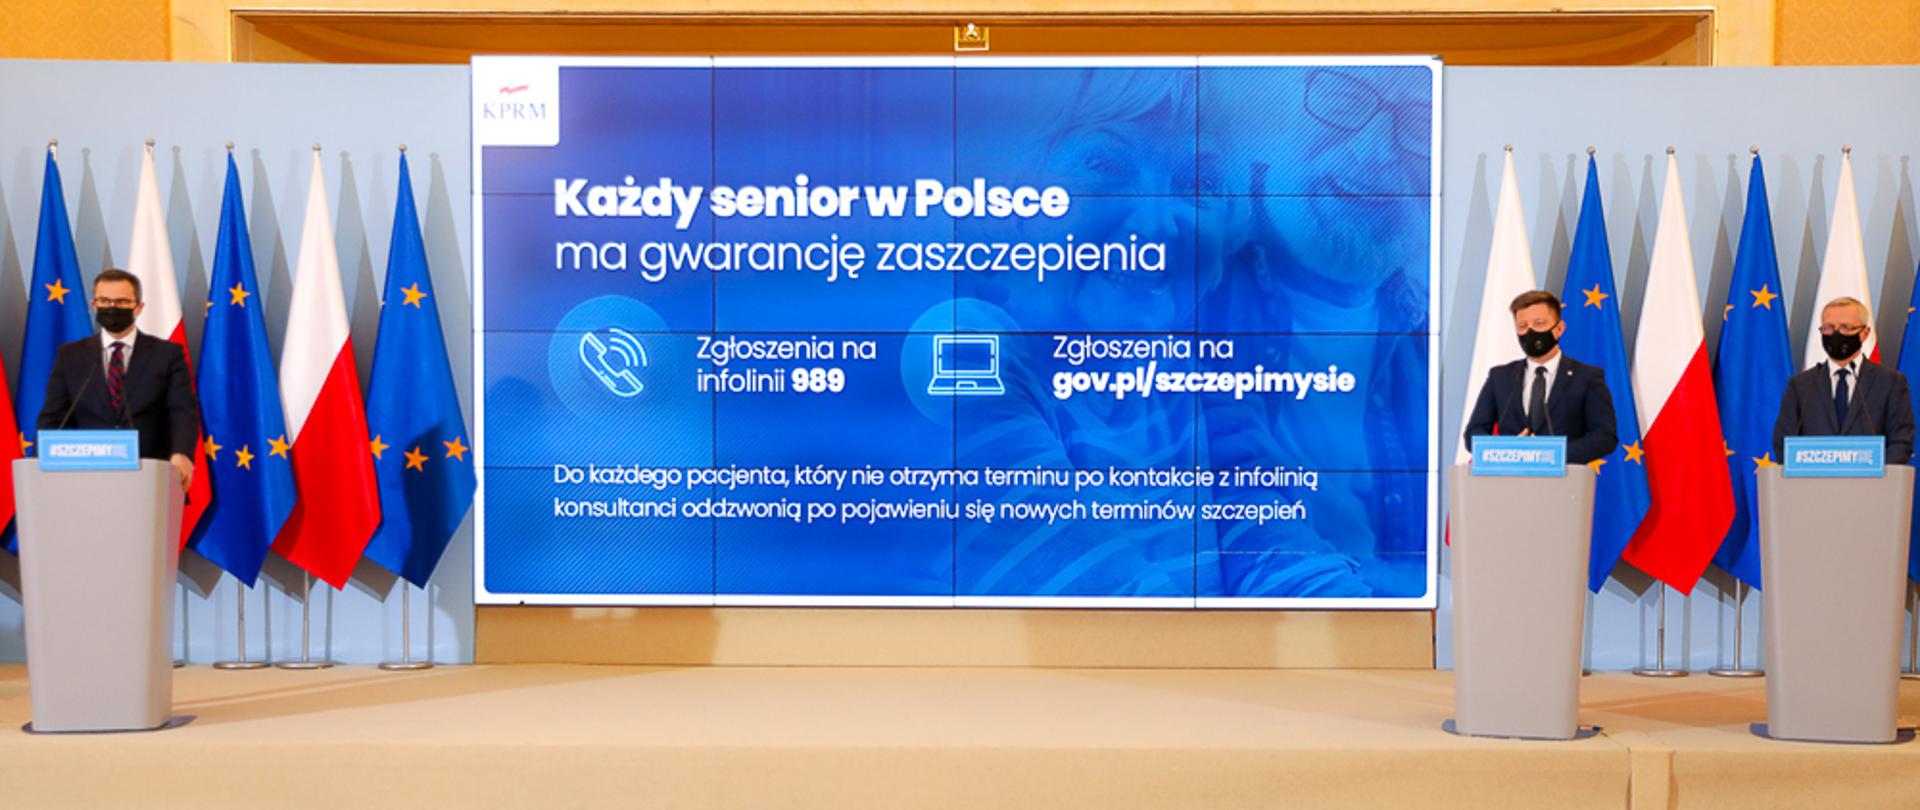 Konferencja prasowa z udziałem Szefa KPRM Michała Dworczyka oraz sekretarza stanu Marka Zagórskiego. W tle ekran z napisem: "każde senior w Polsce ma gwarancję zaszczepienia"